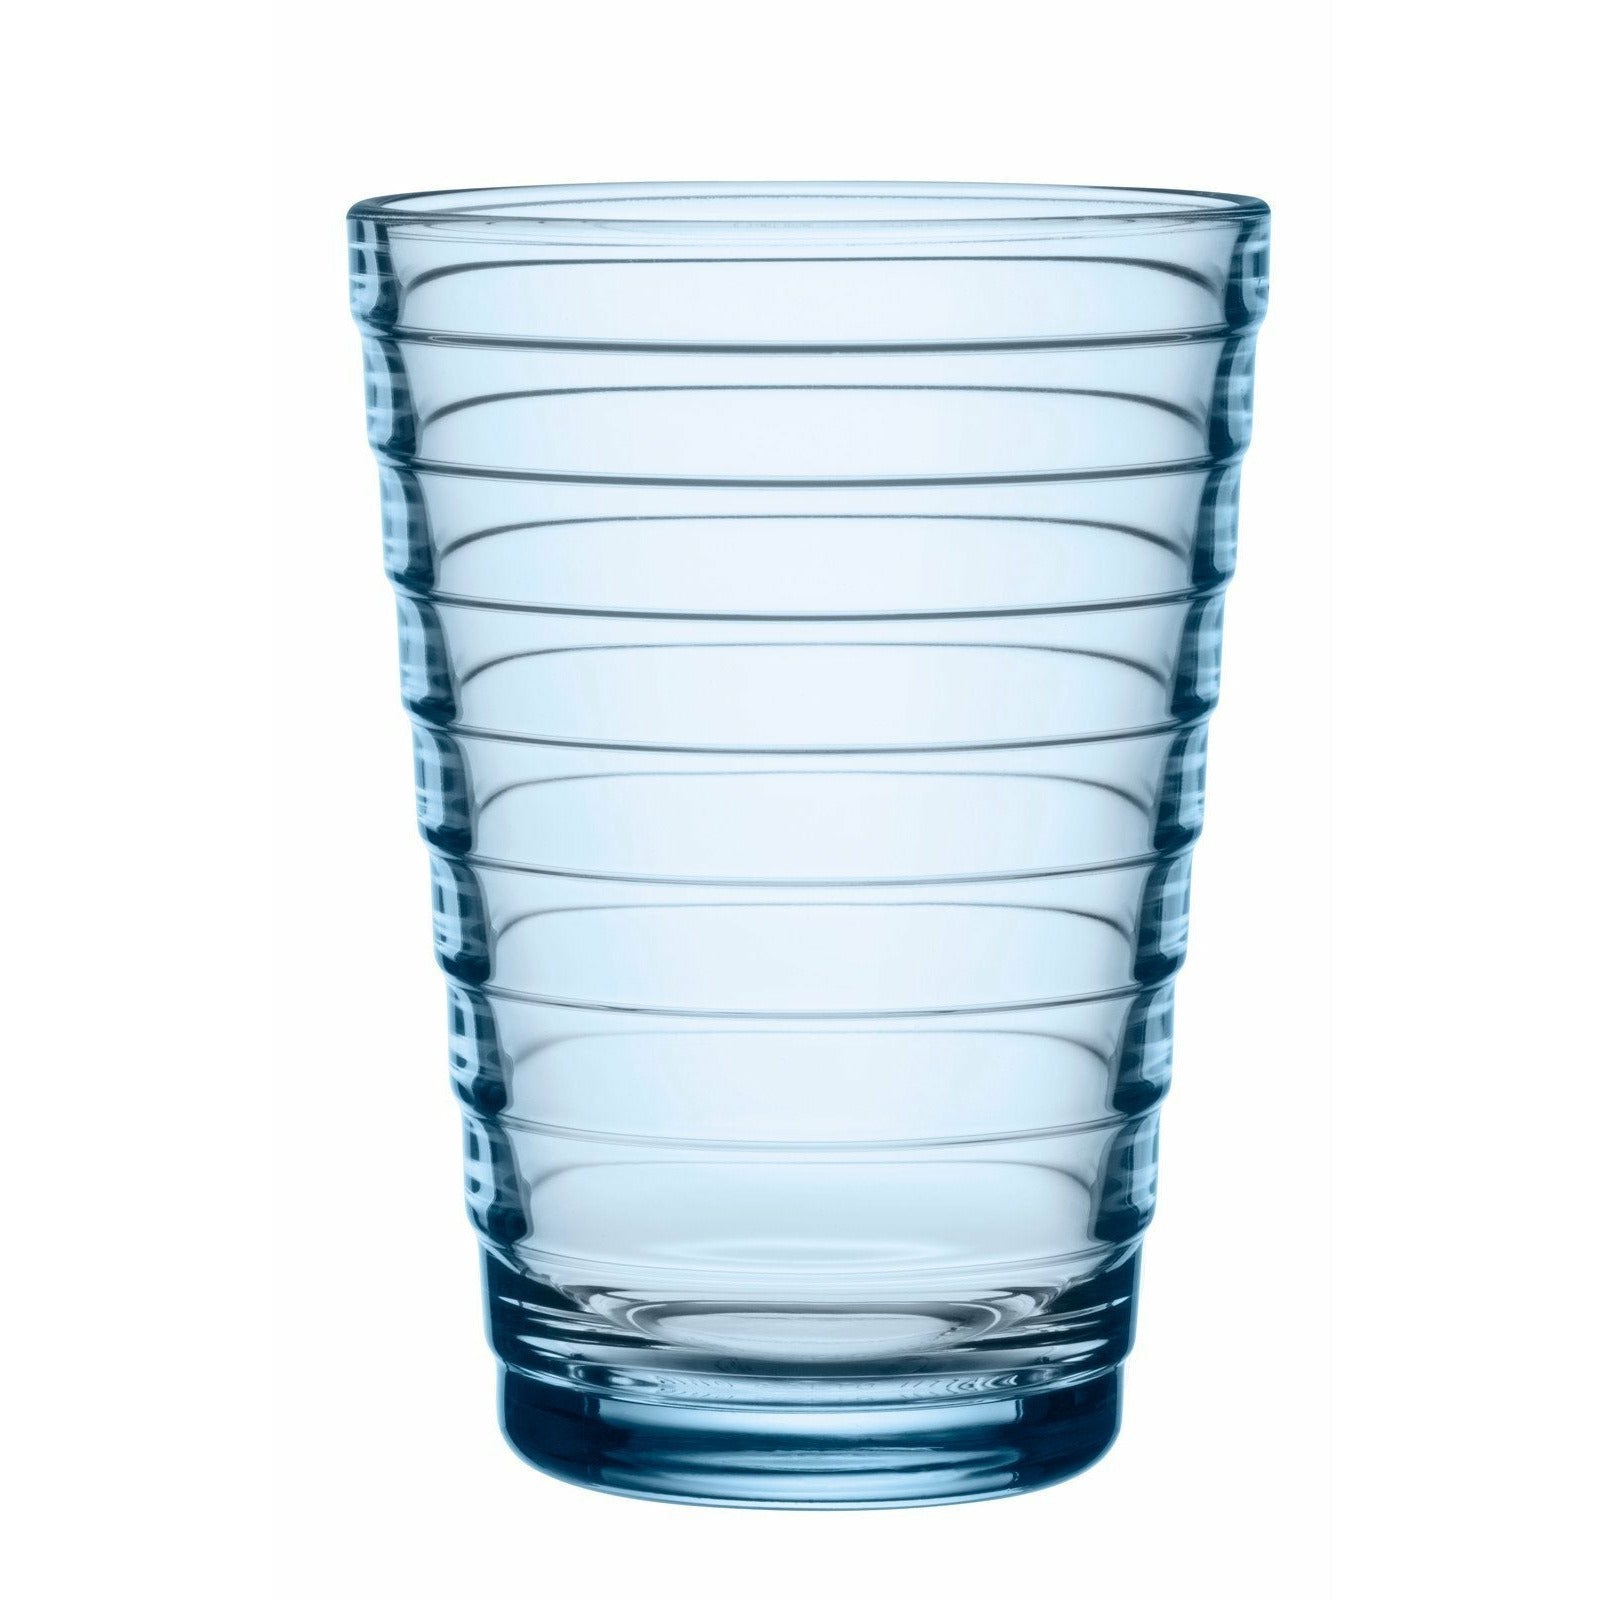 Iittala Aino aalto juomasi lasi Aqua 33cl, 2 kpl.